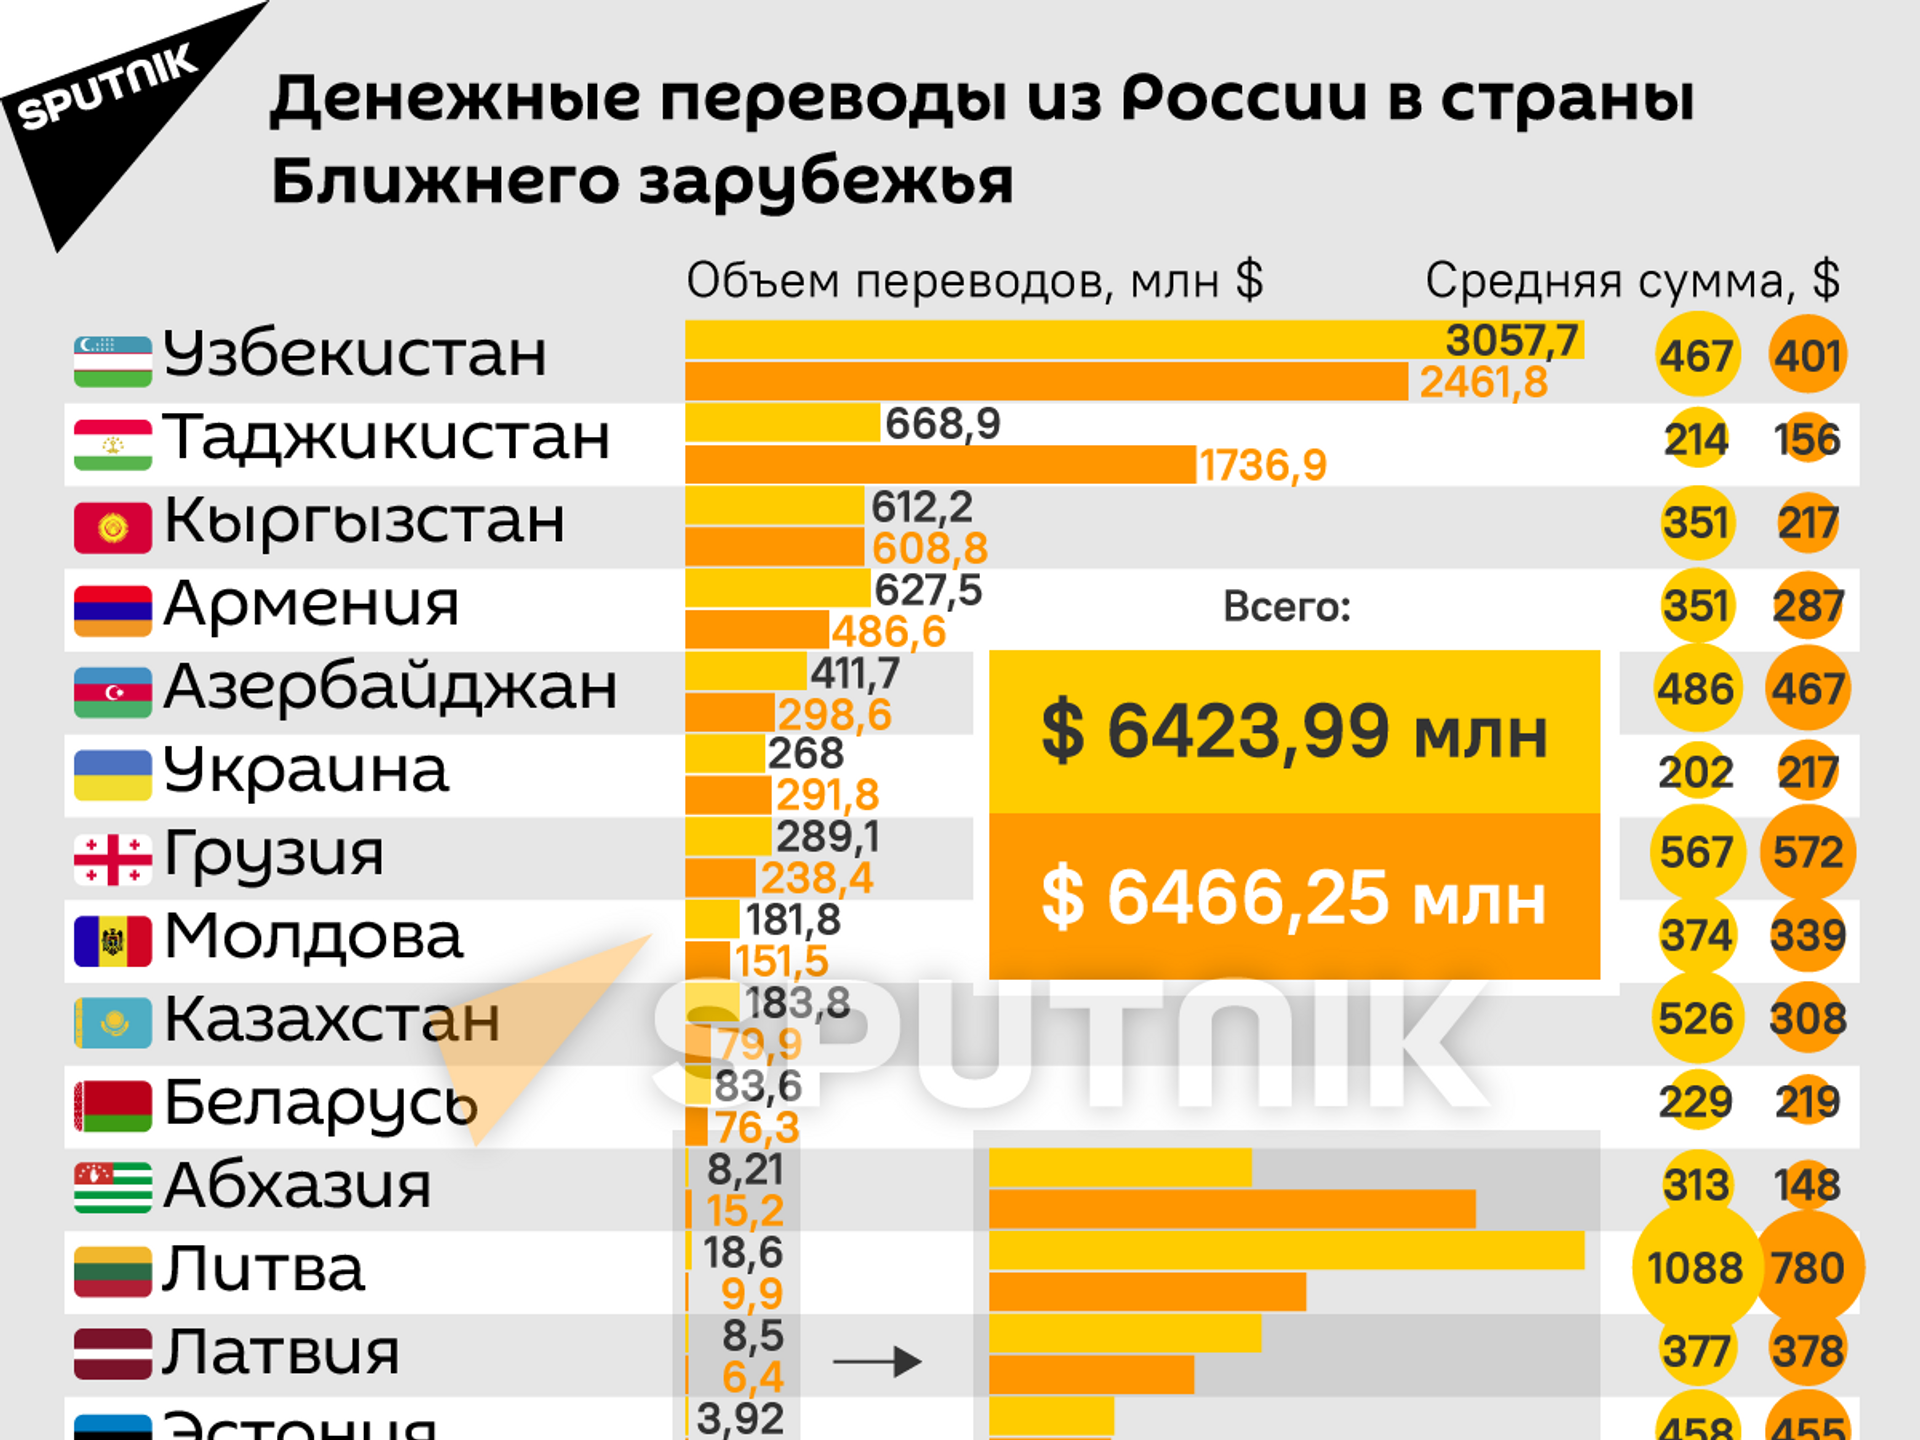 Сколько денег переводят мигранты из России в страны СНГ? - Sputnik Армения, 1920, 17.05.2021